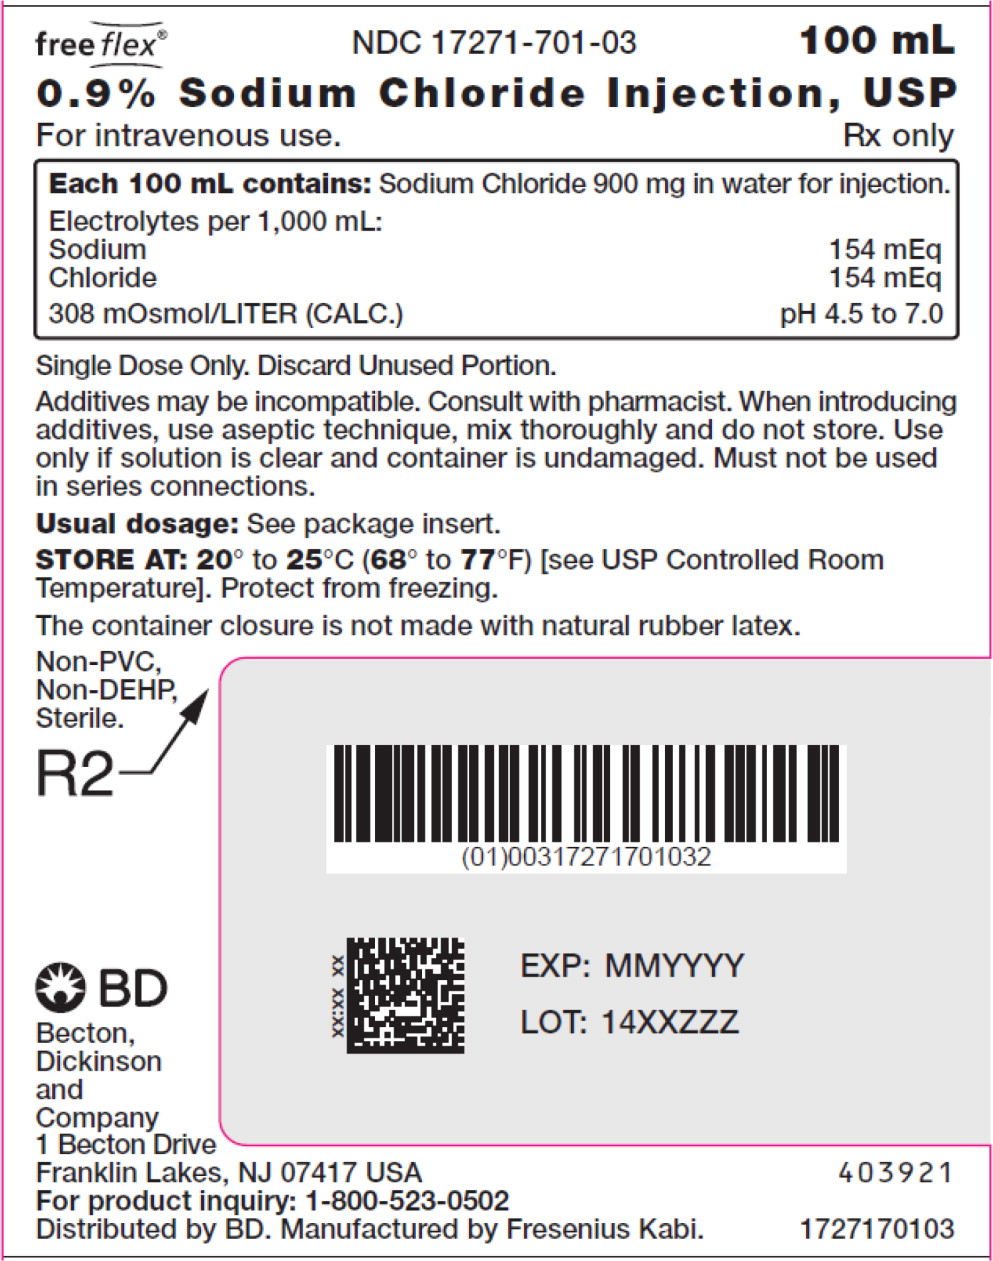 PACKAGE LABEL – PRINCIPAL DISPLAY PANEL – Sodium Chloride 100 mL Bag Label
